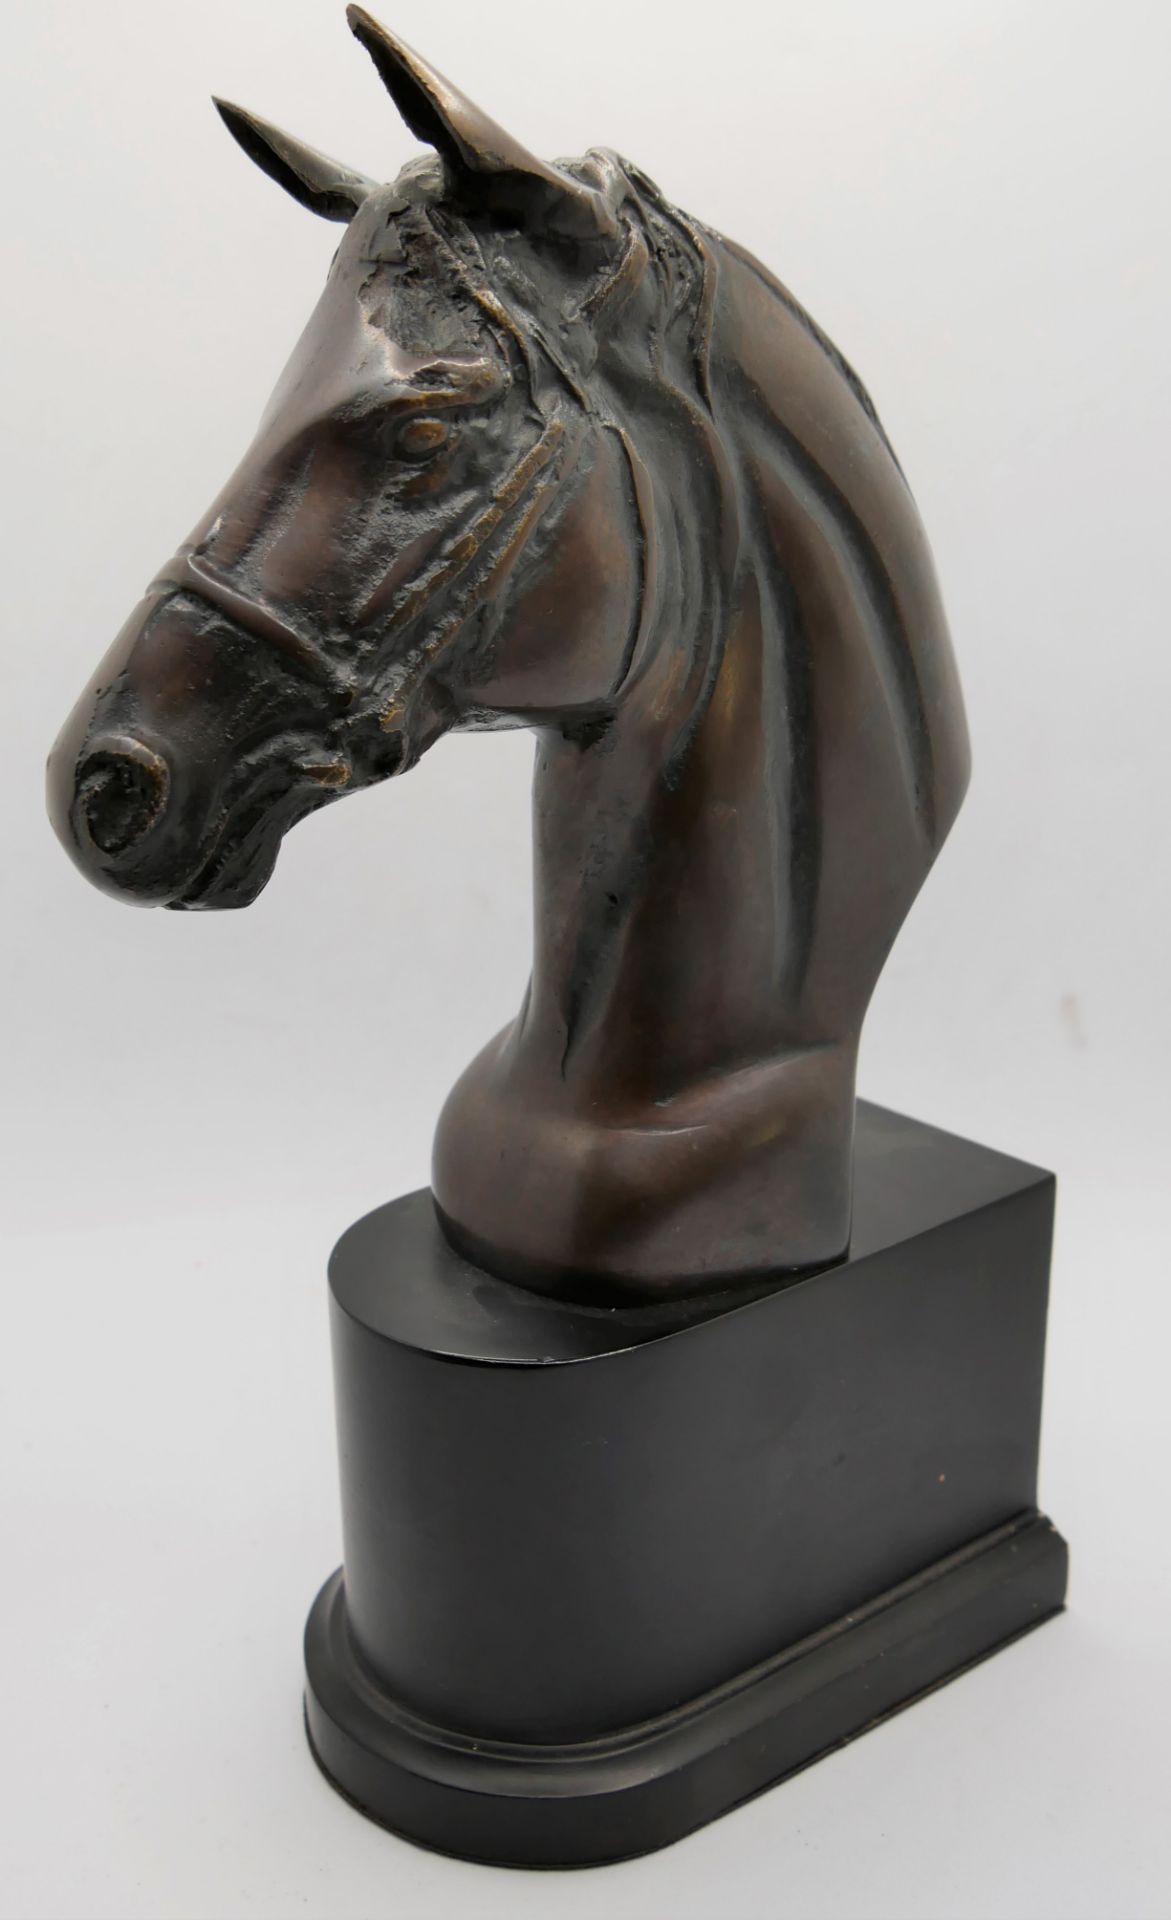 unbekannter Künstler, Bronzefigur Pferdekopf auf Sockel. Gesamtmaße: Höhe ca. 30 cm, Tiefe ca. 14